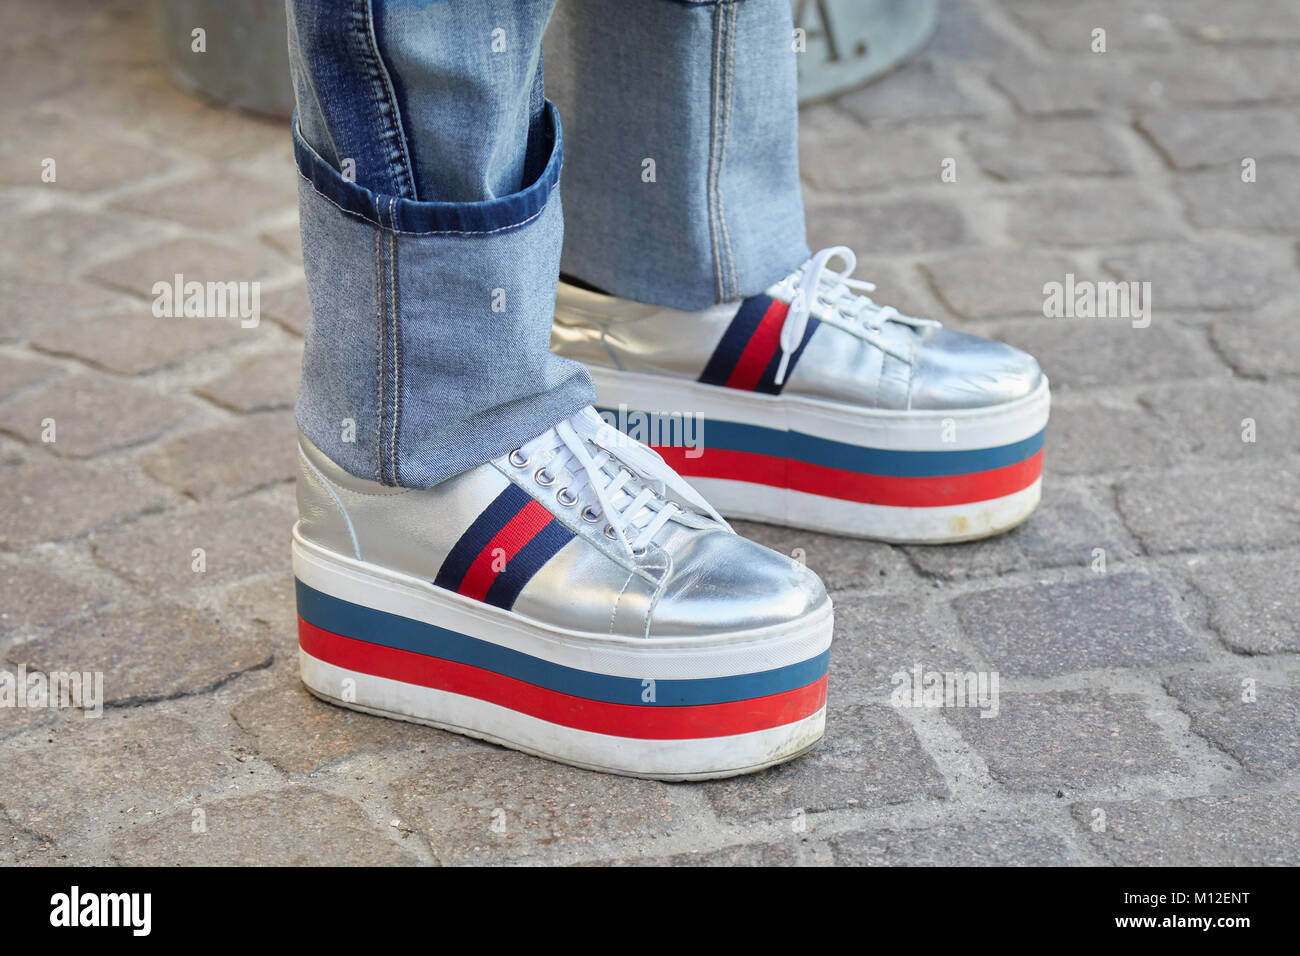 Milano - 14 gennaio: Uomo con tacco a cuneo argento sneakers in rosso,  colori blu e bianco